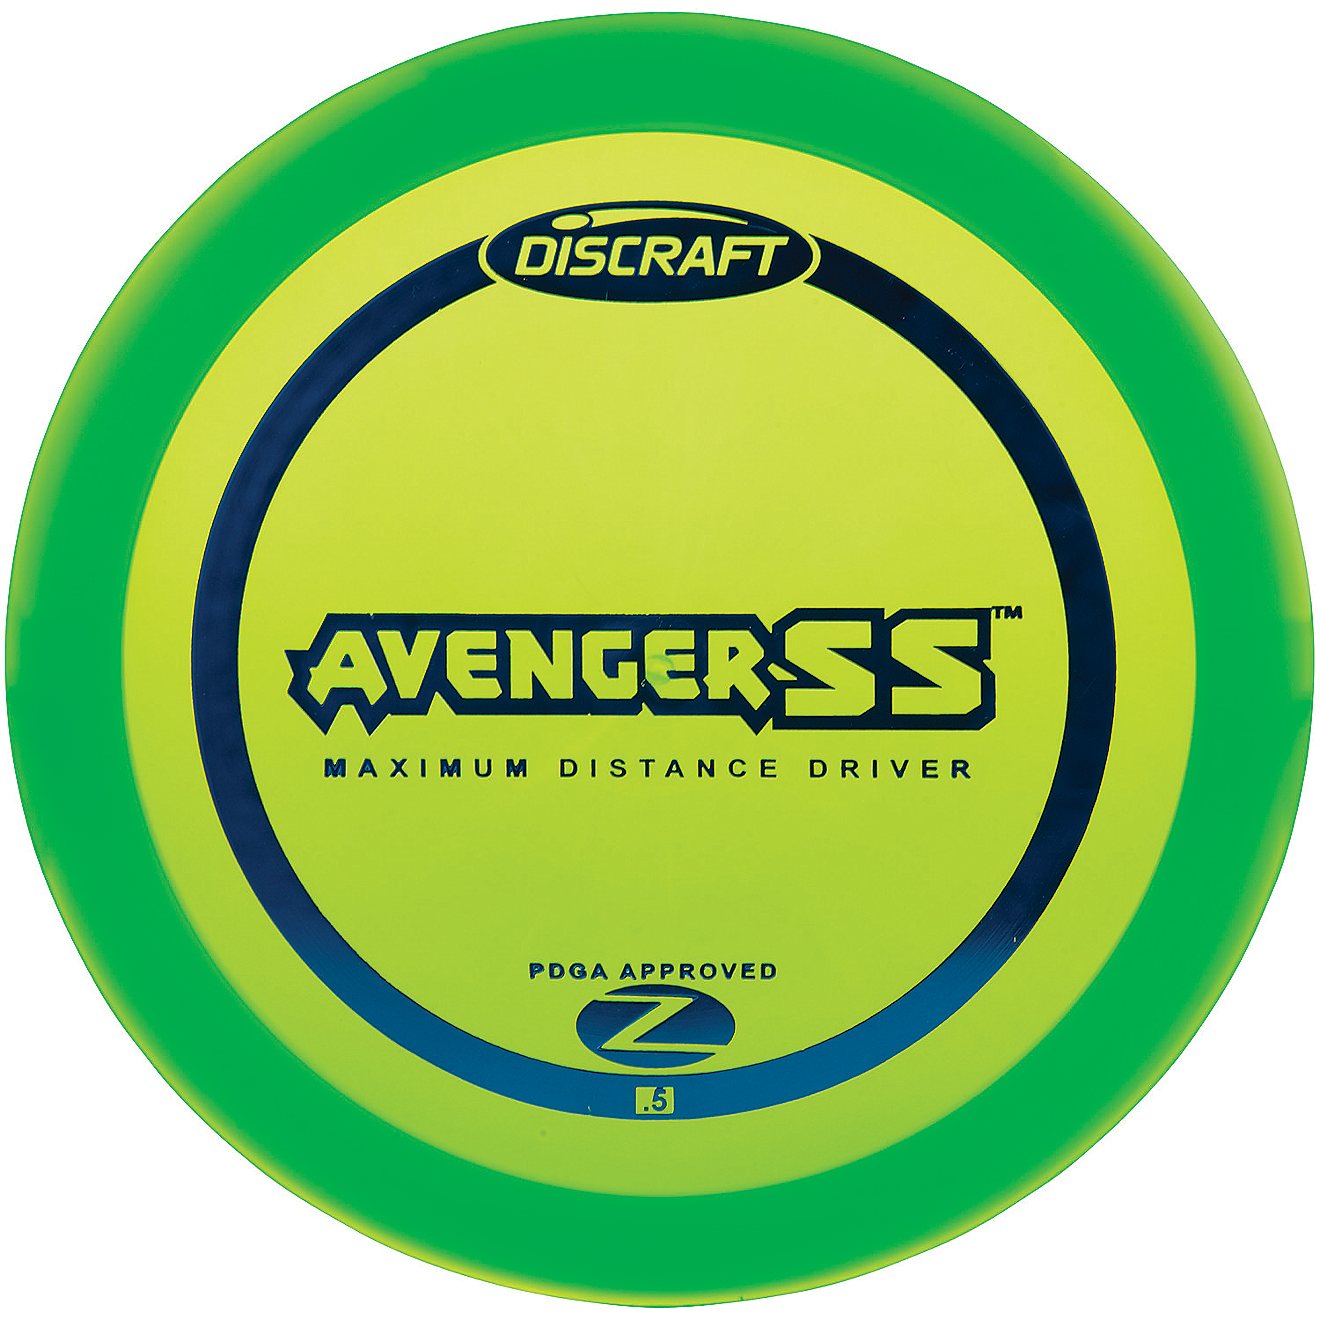 Discraft Avenger SS™ Z Disc Golf Driver                                                                                        - view number 1